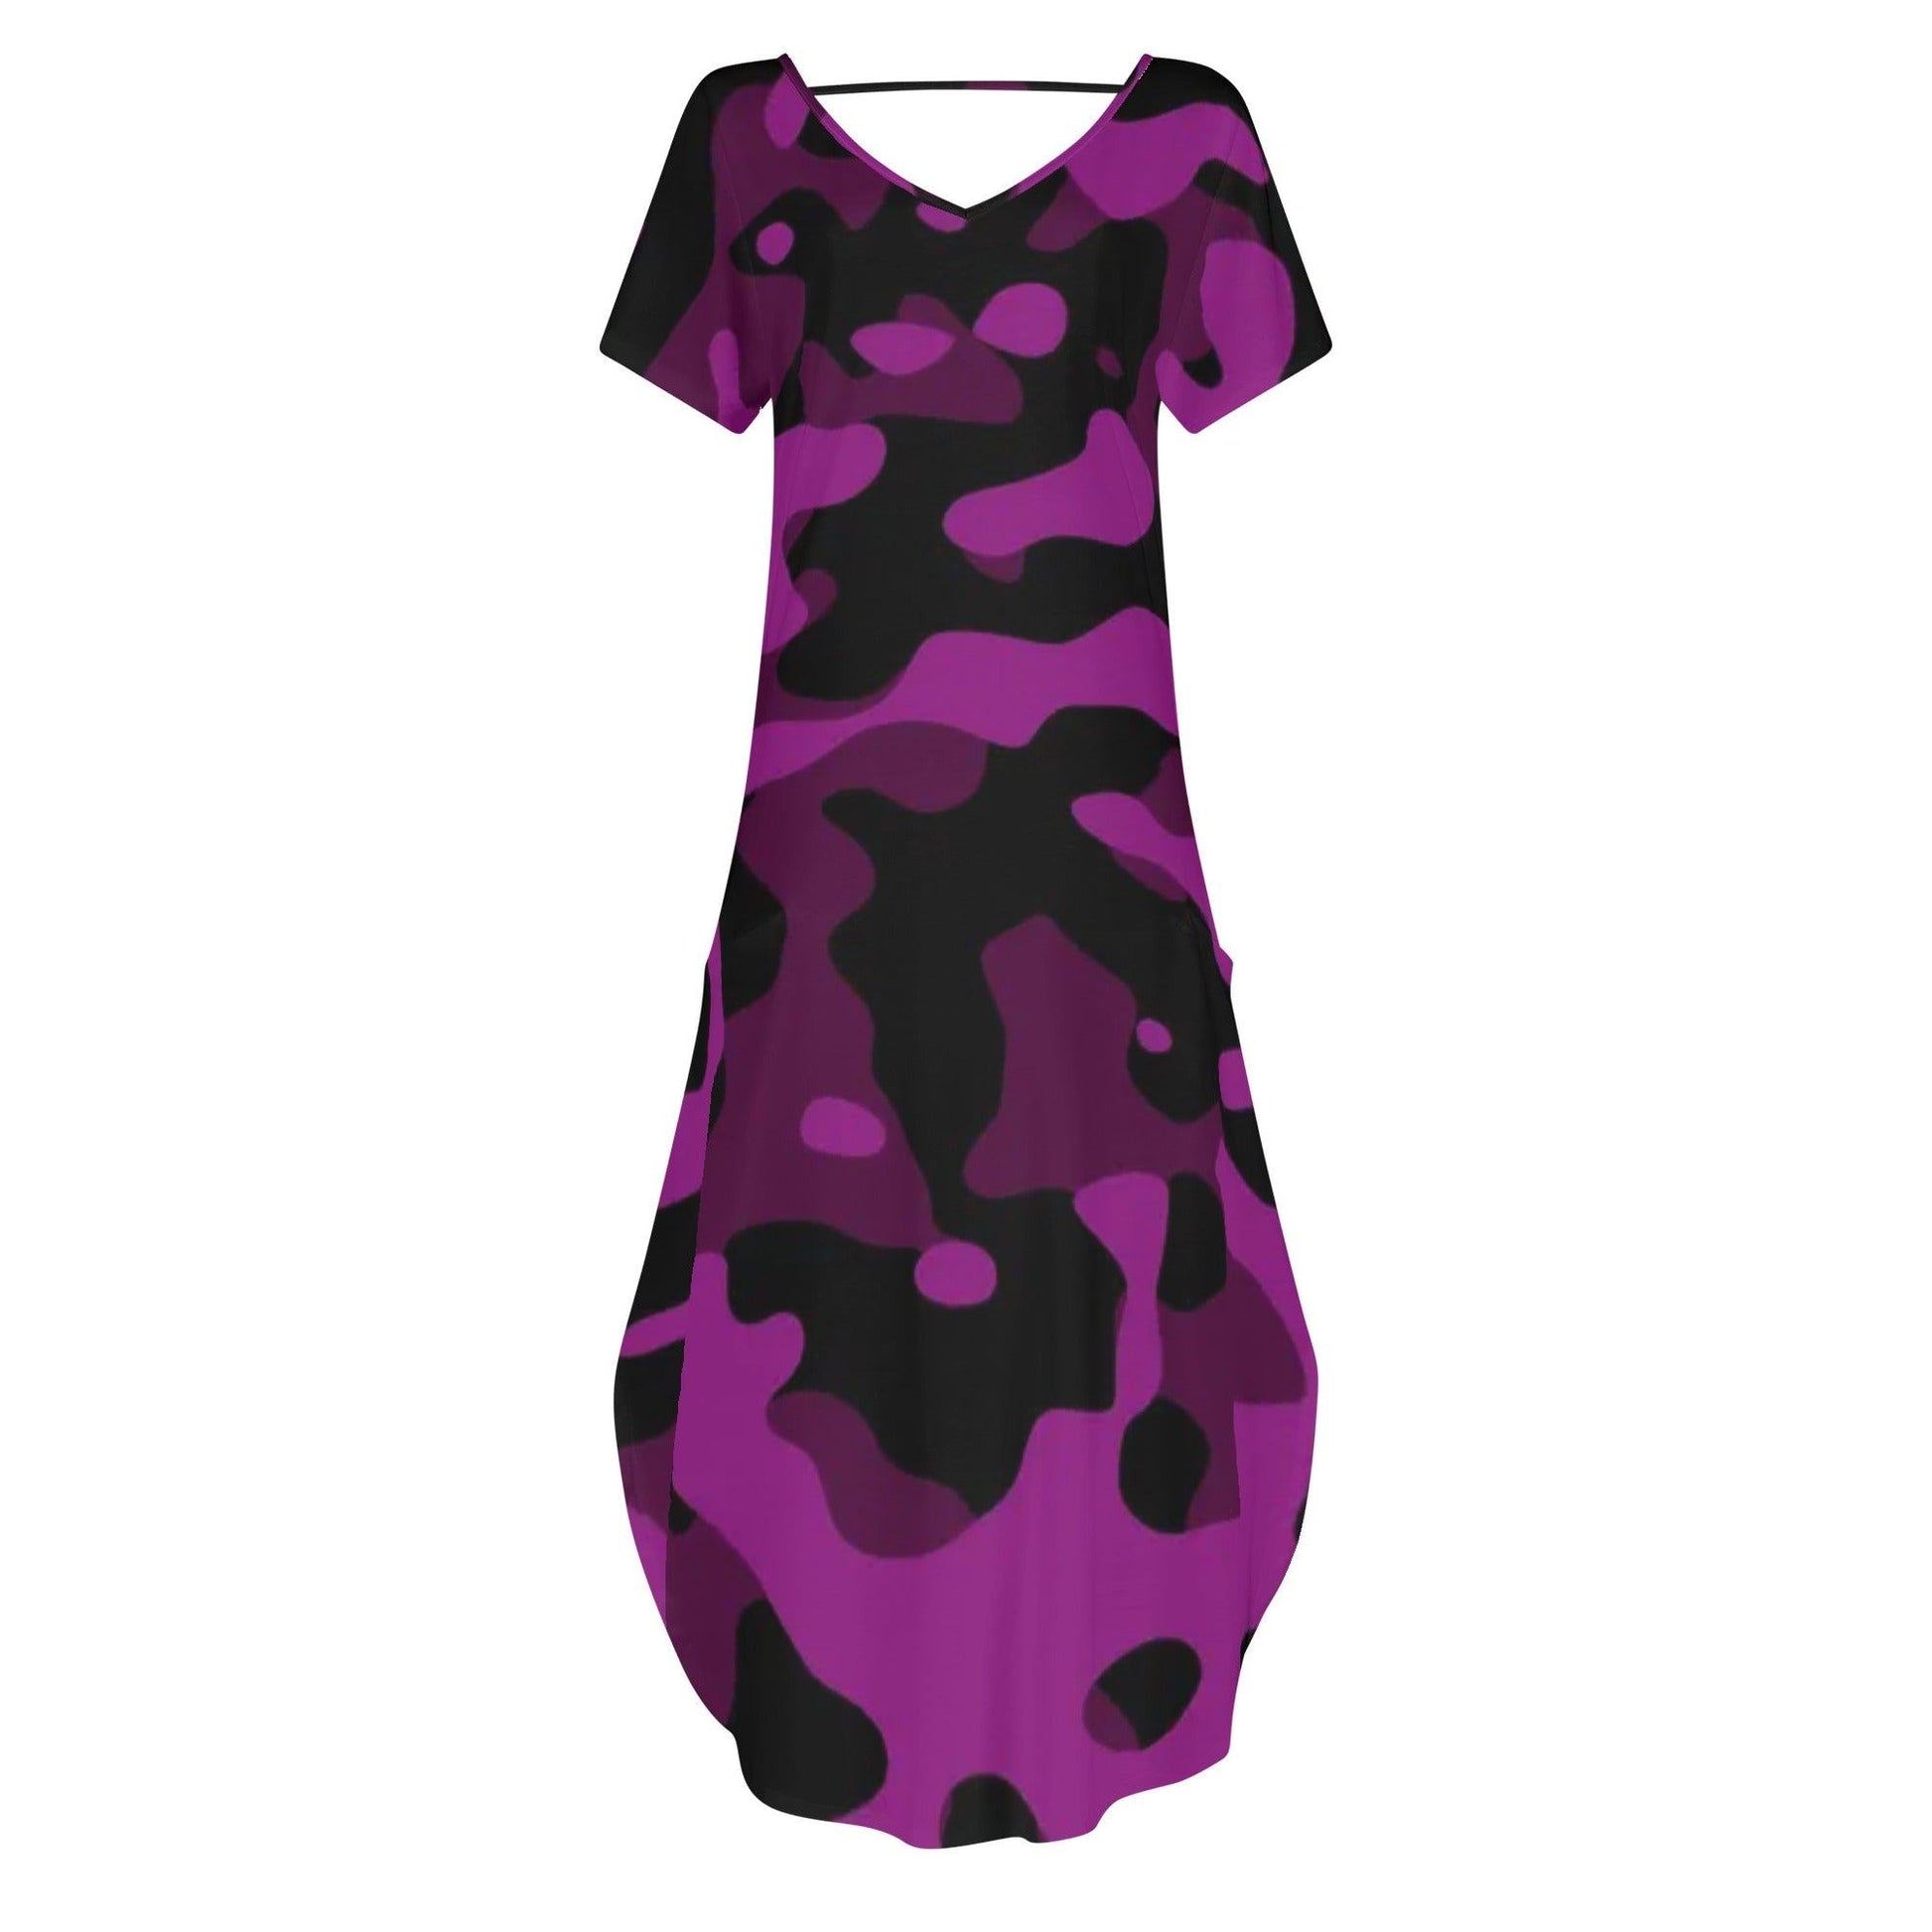 Black Pink Camouflage kurzärmliges drapiertes Kleid drapiertes Kleid 63.99 Black, Camouflage, drapiert, kleid, kurzärmlig, Pink JLR Design